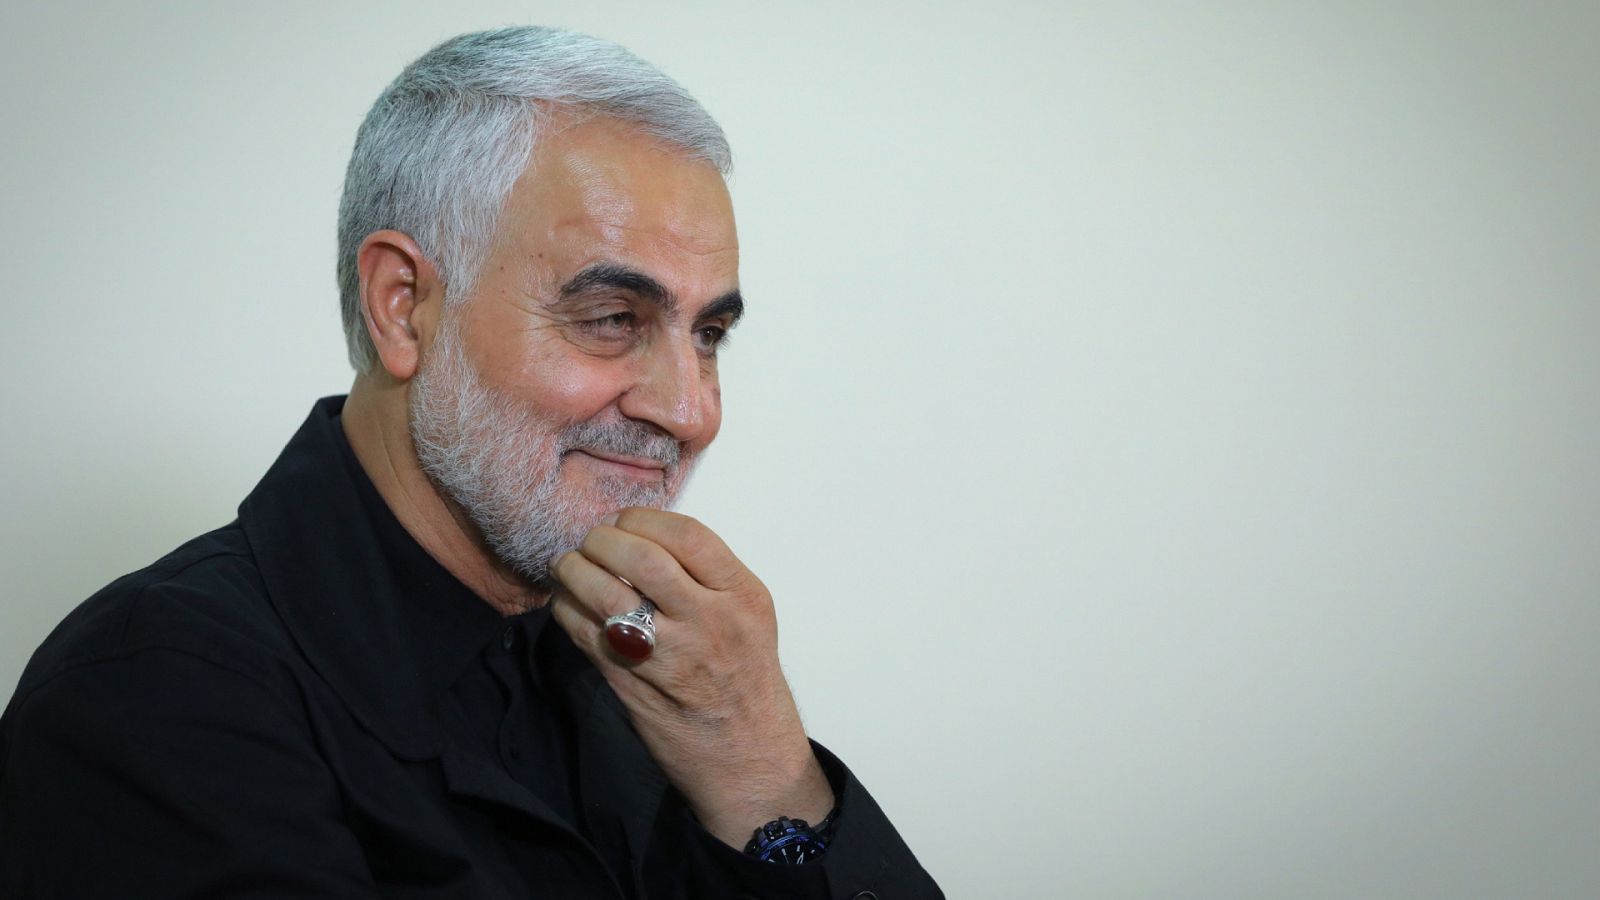 14 horas - ¿Quién era Qassen Soleimani, el comandante iraní asesinado por EE.UU.?